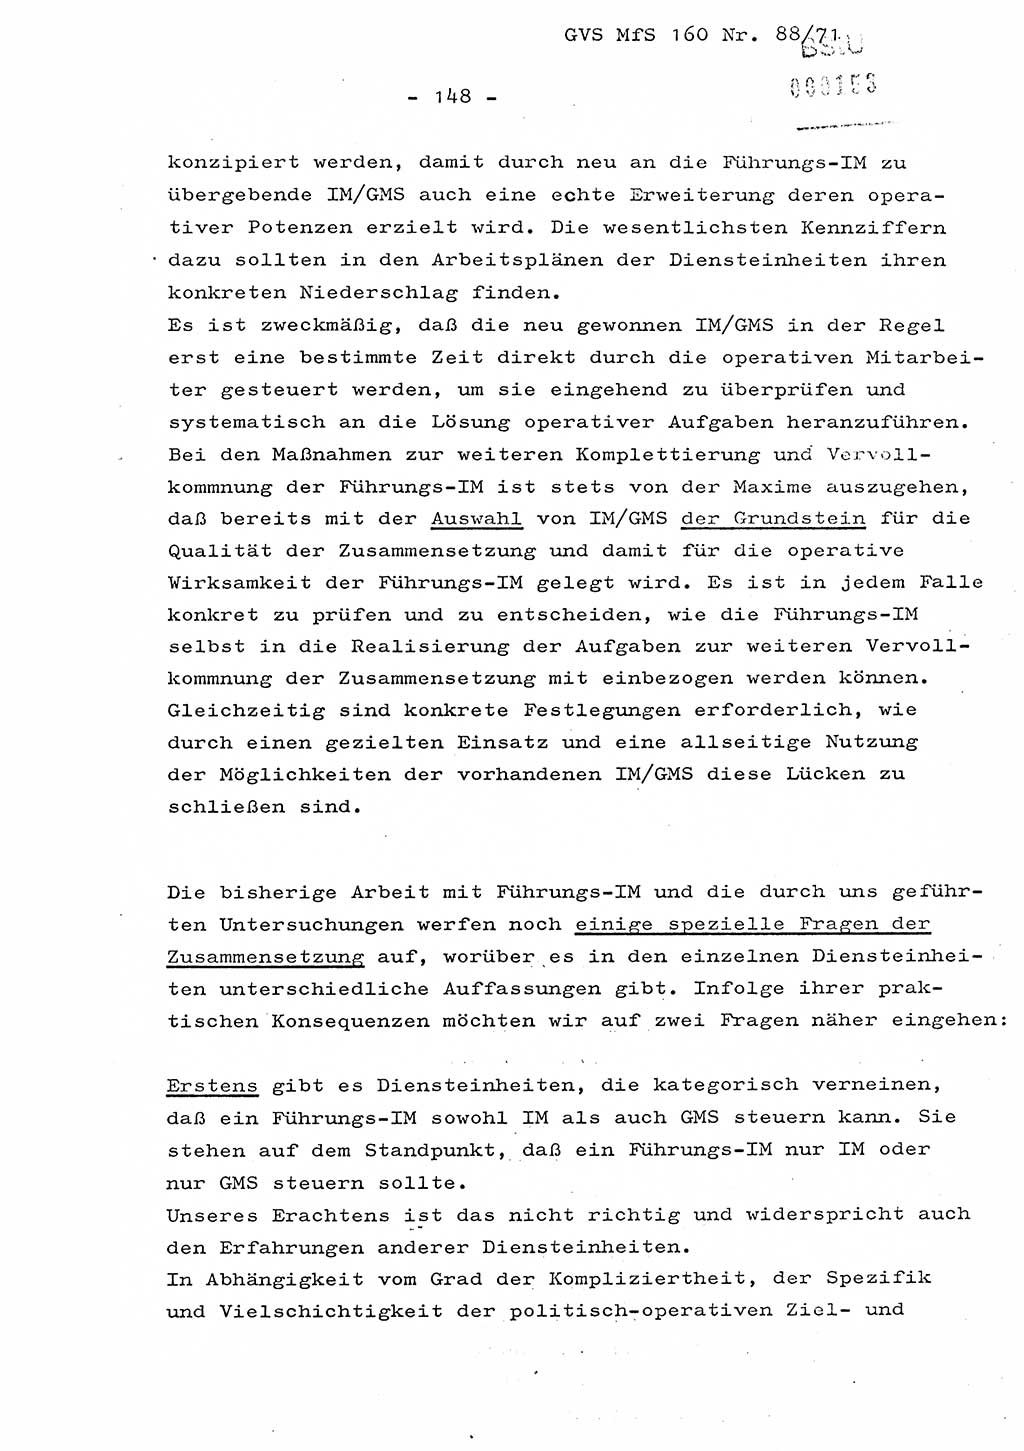 Dissertation Oberstleutnant Josef Schwarz (BV Schwerin), Major Fritz Amm (JHS), Hauptmann Peter Gräßler (JHS), Ministerium für Staatssicherheit (MfS) [Deutsche Demokratische Republik (DDR)], Juristische Hochschule (JHS), Geheime Verschlußsache (GVS) 160-88/71, Potsdam 1972, Seite 148 (Diss. MfS DDR JHS GVS 160-88/71 1972, S. 148)